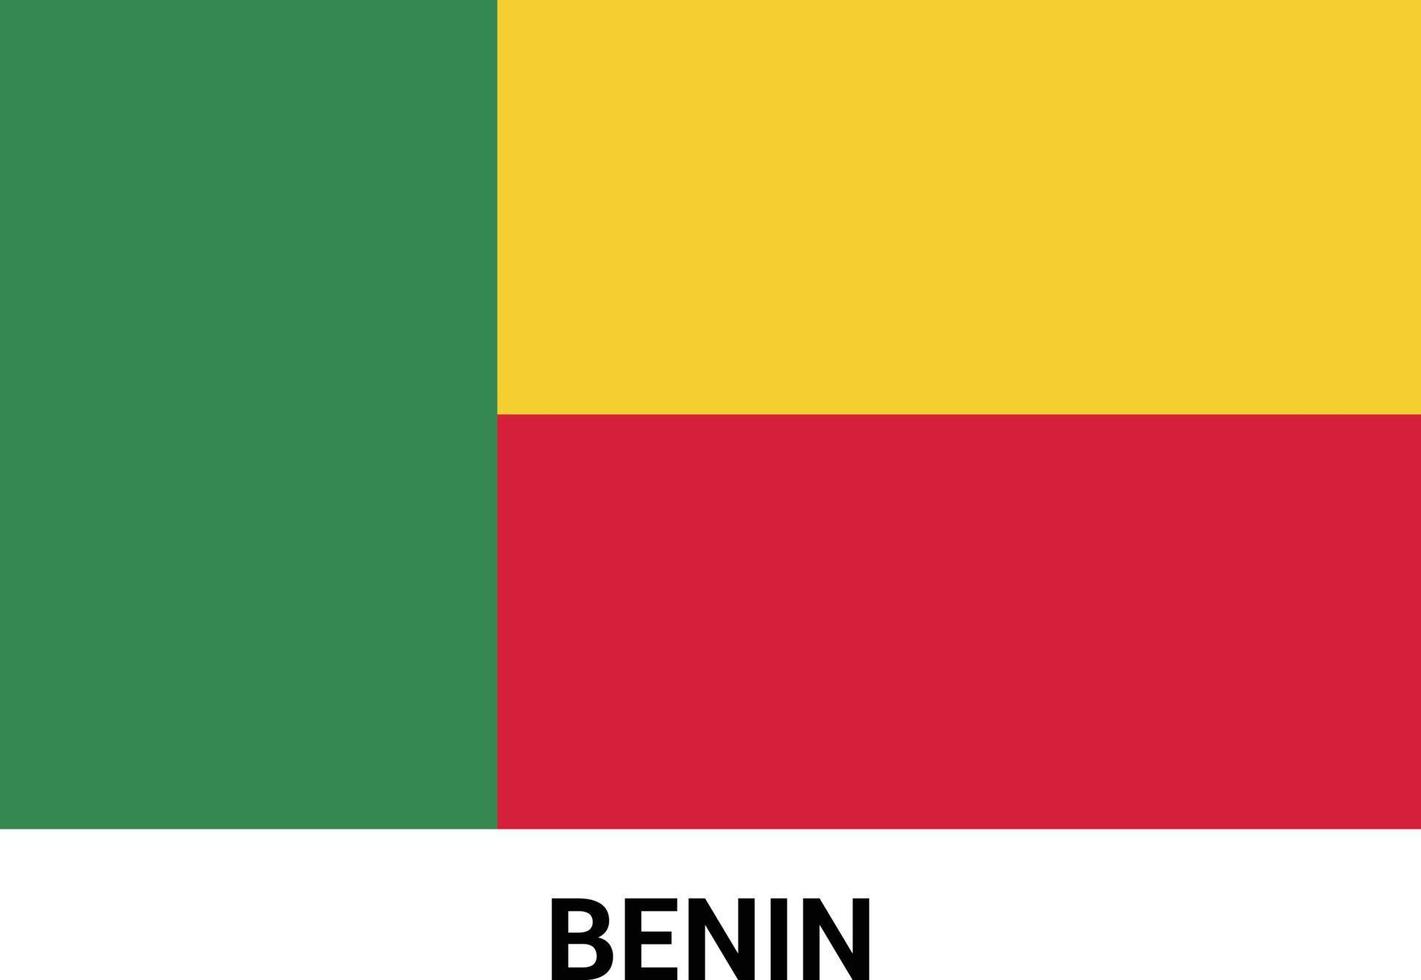 Benin flag design vector